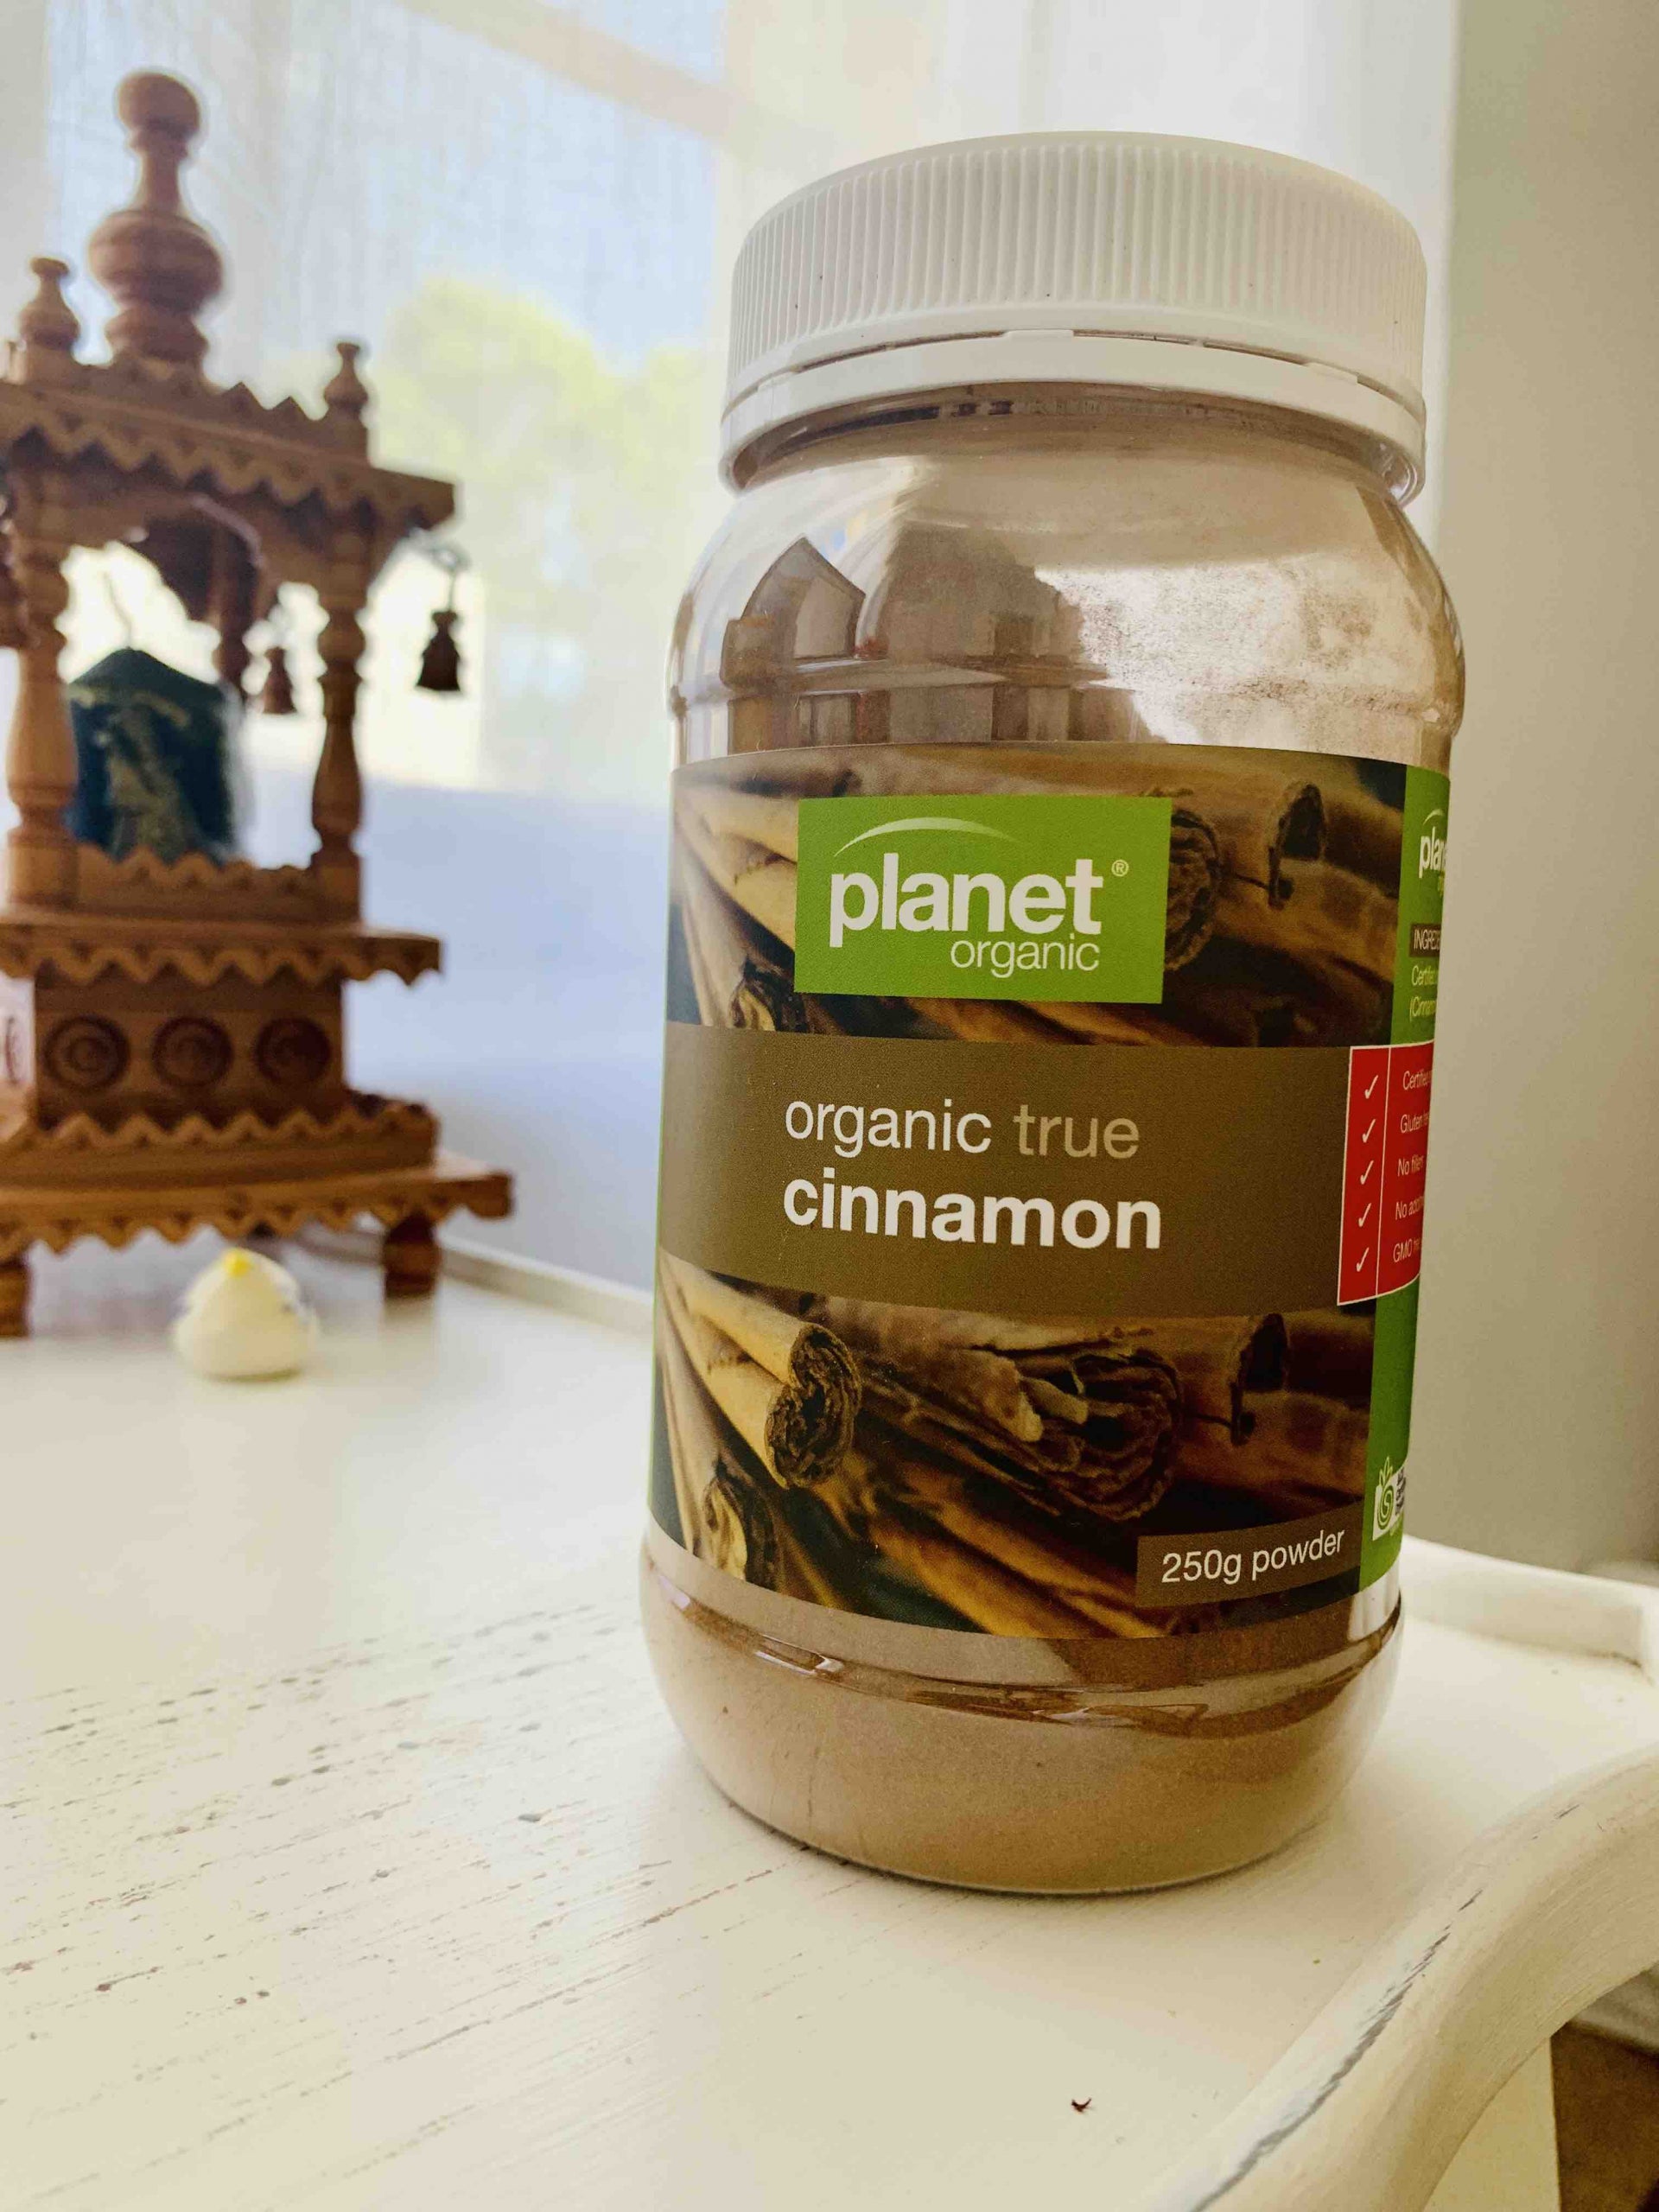 Planet organic - Organic Cinnamon Powder